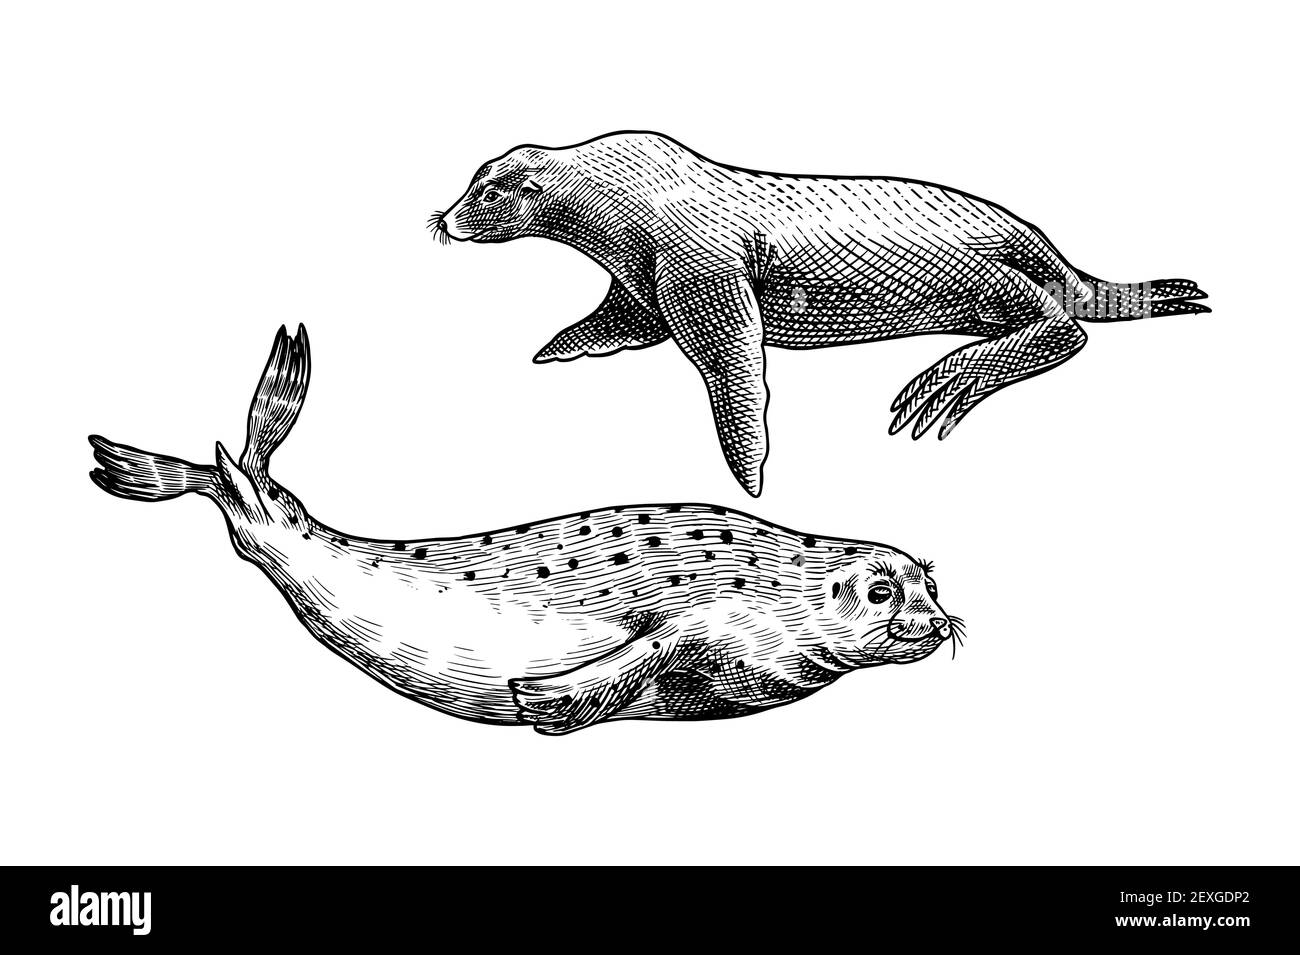 Seelöwe und Seehund. Meerestiere, nautische Tiere. Pelzrobbe oder Finnipiden. Retro-Schilder im Vintage-Stil. Doodle-Stil. Handgezeichnete gravierte Skizze Stock Vektor